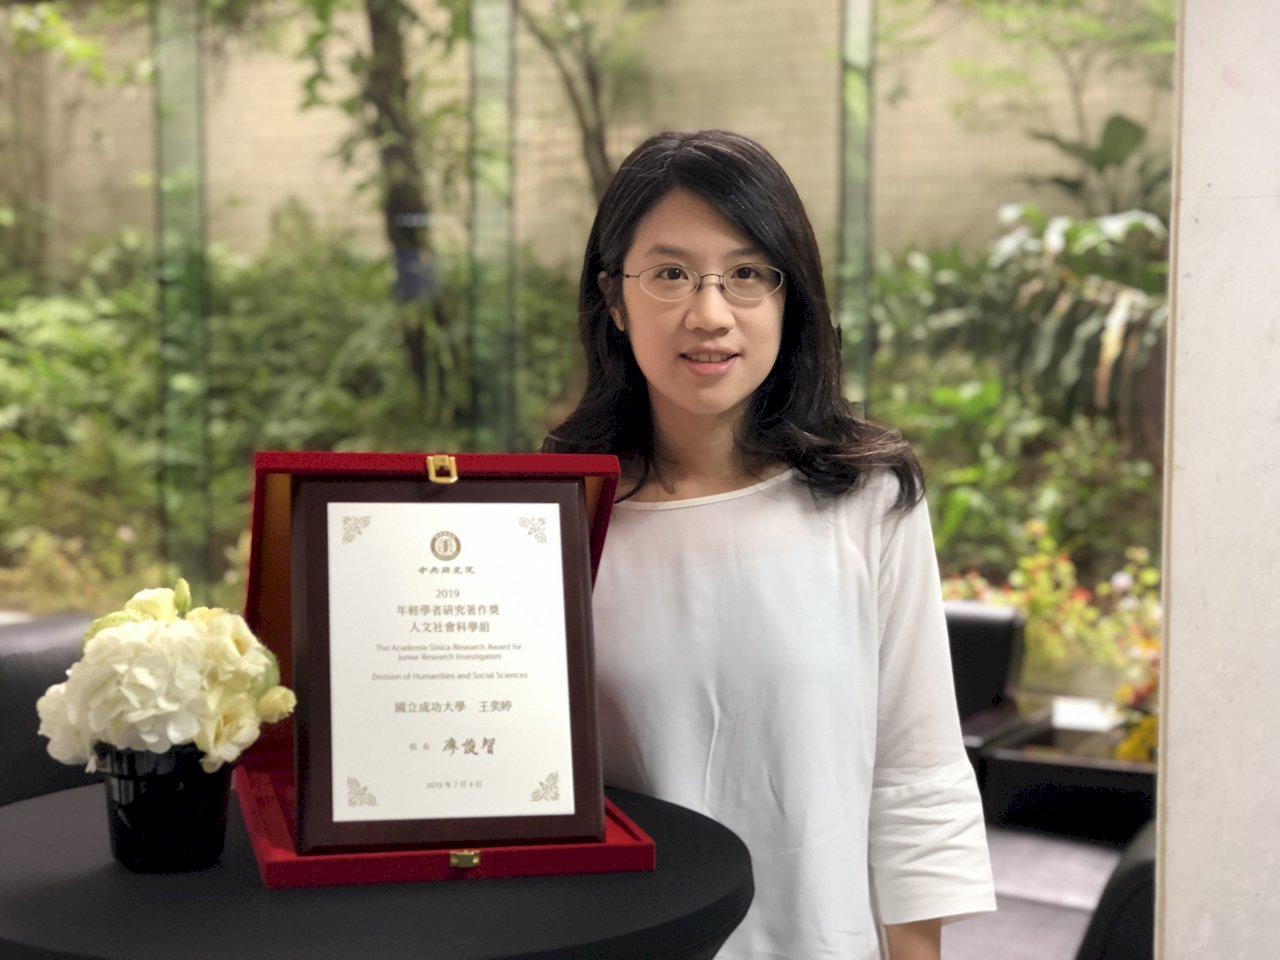 37歲成大助教授王奕婷專攻侍從主義 獲2019年輕學者研究著作獎